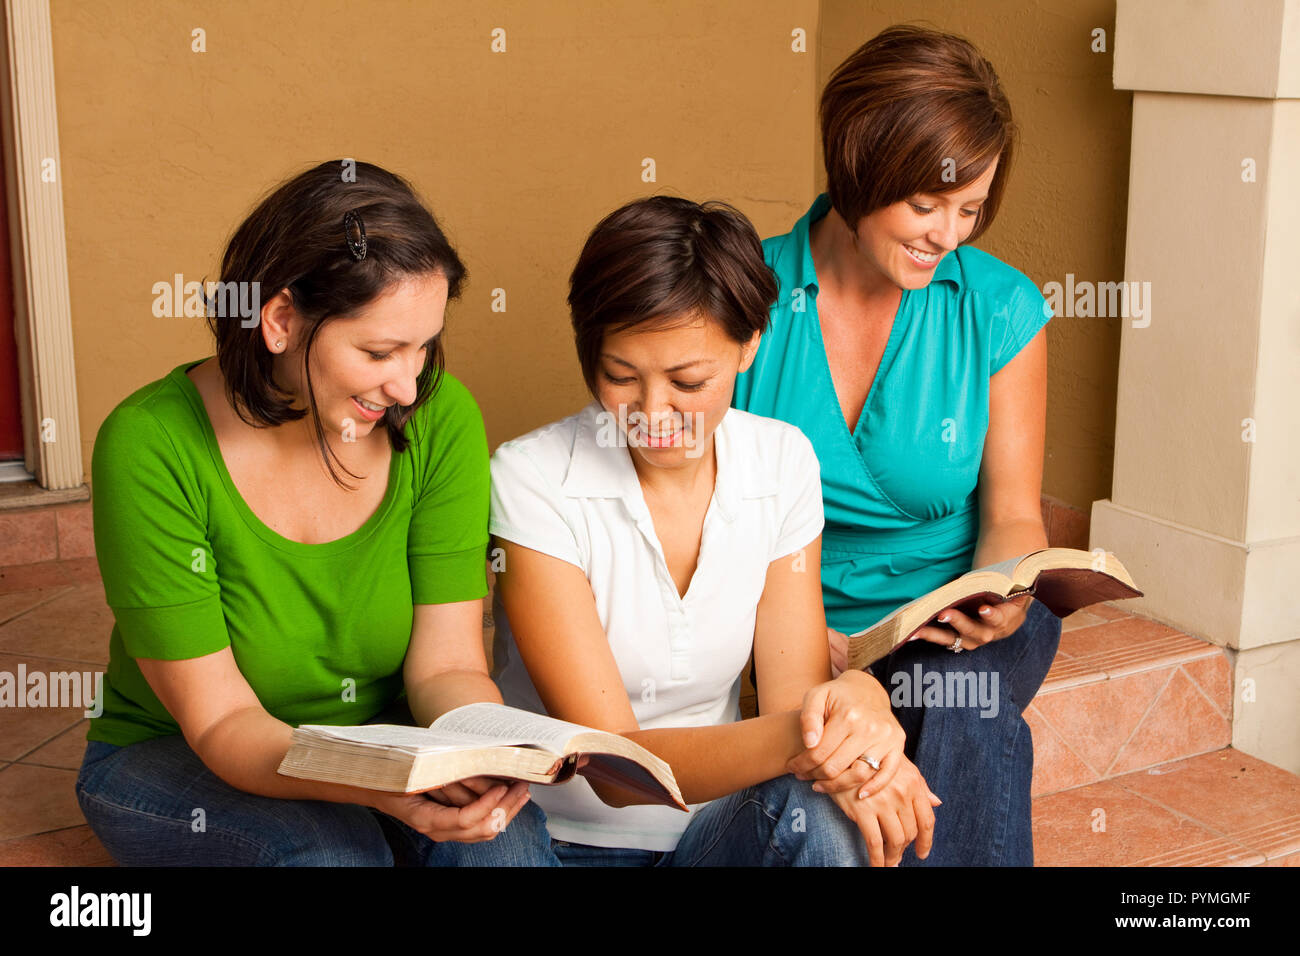 Multikulturelle kleine Gruppe. Women's kleine Gruppe die Bibel zu studieren. Stockfoto